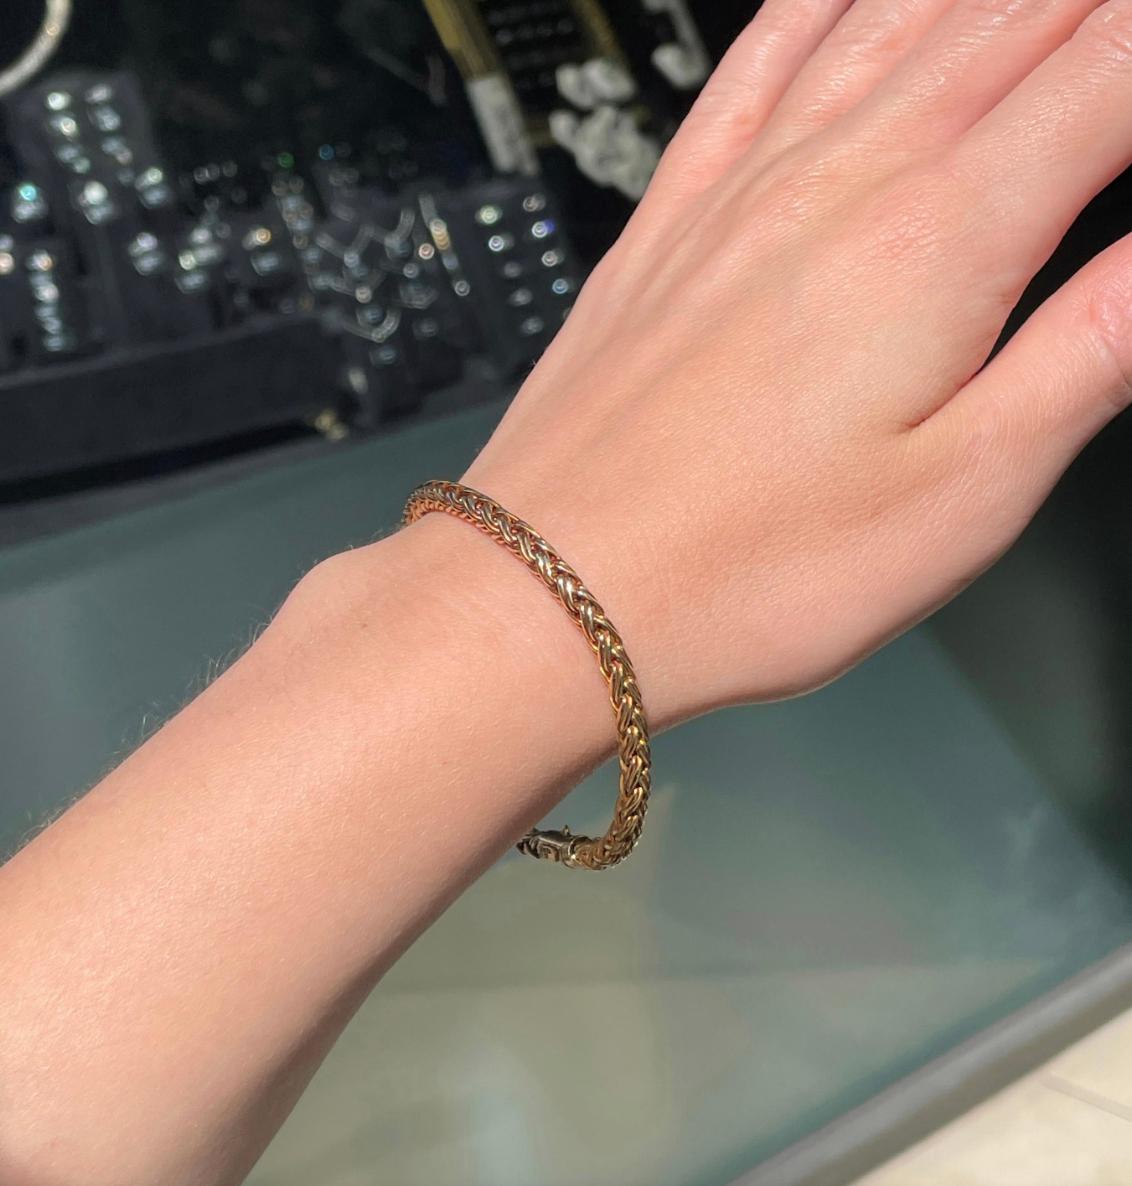 Ce bracelet classique de Tiffany & Co. présente une chaîne ronde tressée en or jaune 18 carats. Cette pièce est un véritable clin d'œil au style vintage de Tiffany et s'associera parfaitement à des tenues décontractées ou habillées. 

Cette pièce